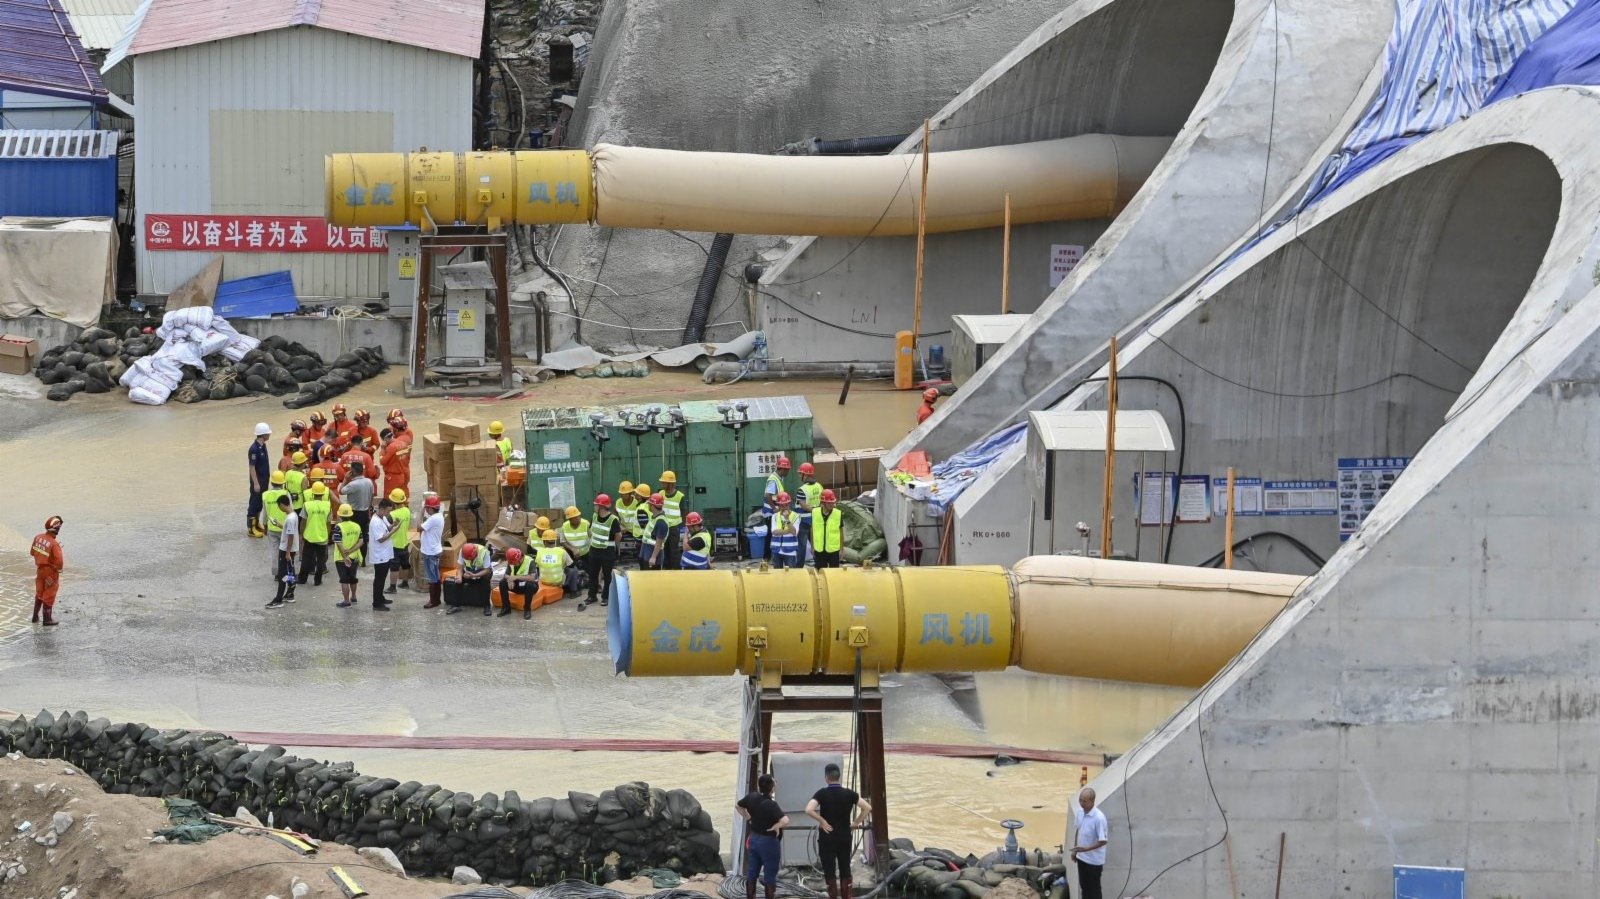 珠海石景山隧道透水事故14名被困人員已全部找到並確認遇難